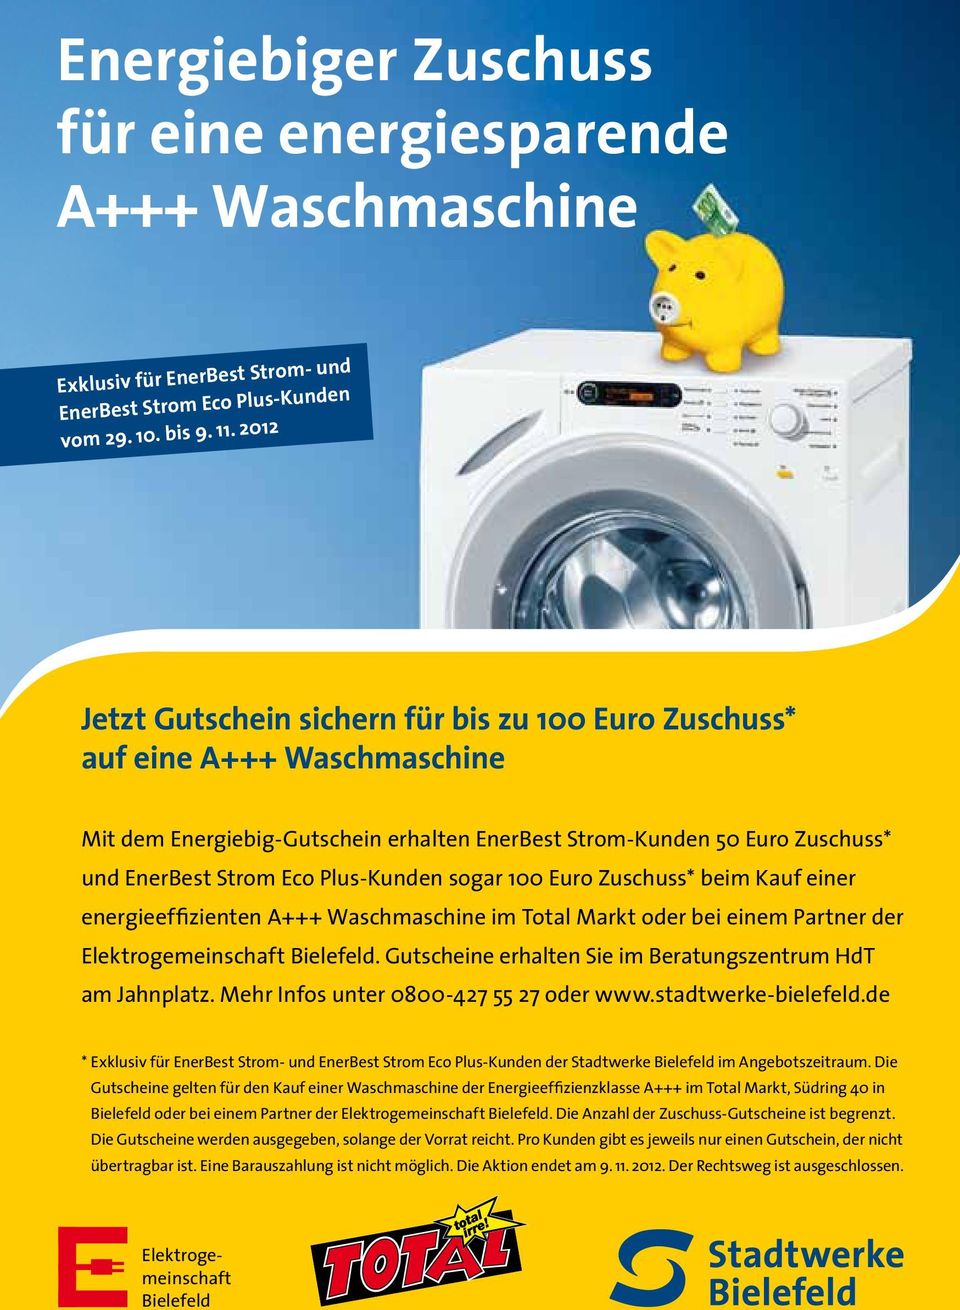 sogar 100 Euro Zuschuss* beim Kauf einer energieeffizienten A+++ Waschmaschine im Total Markt oder bei einem Partner der Elektrogemeinschaft Bielefeld.